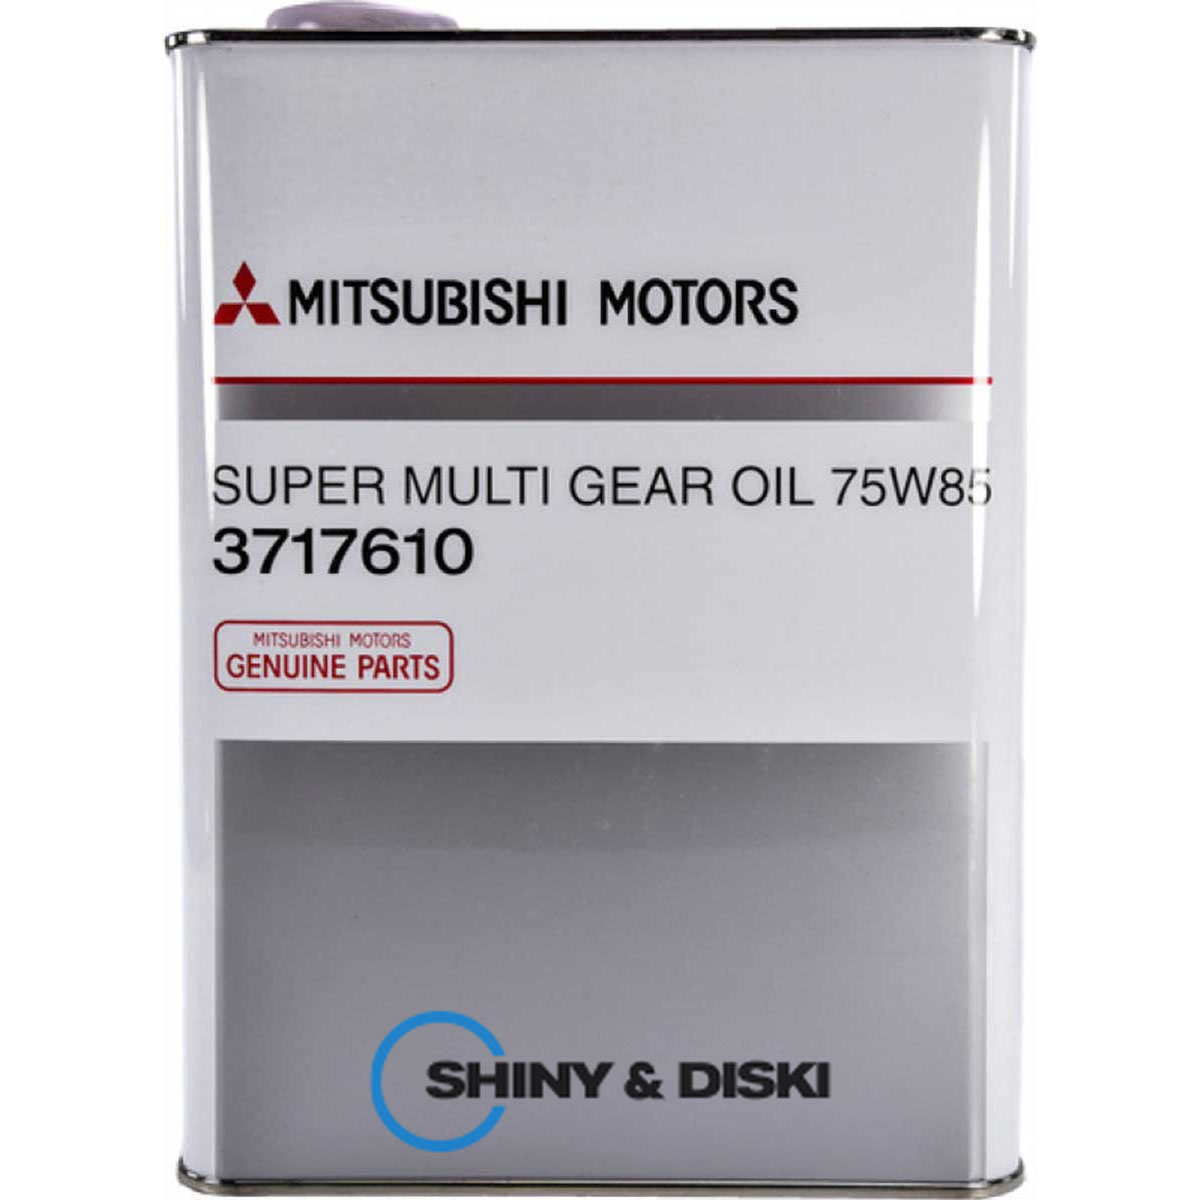 mitsubishi super multi gear oil